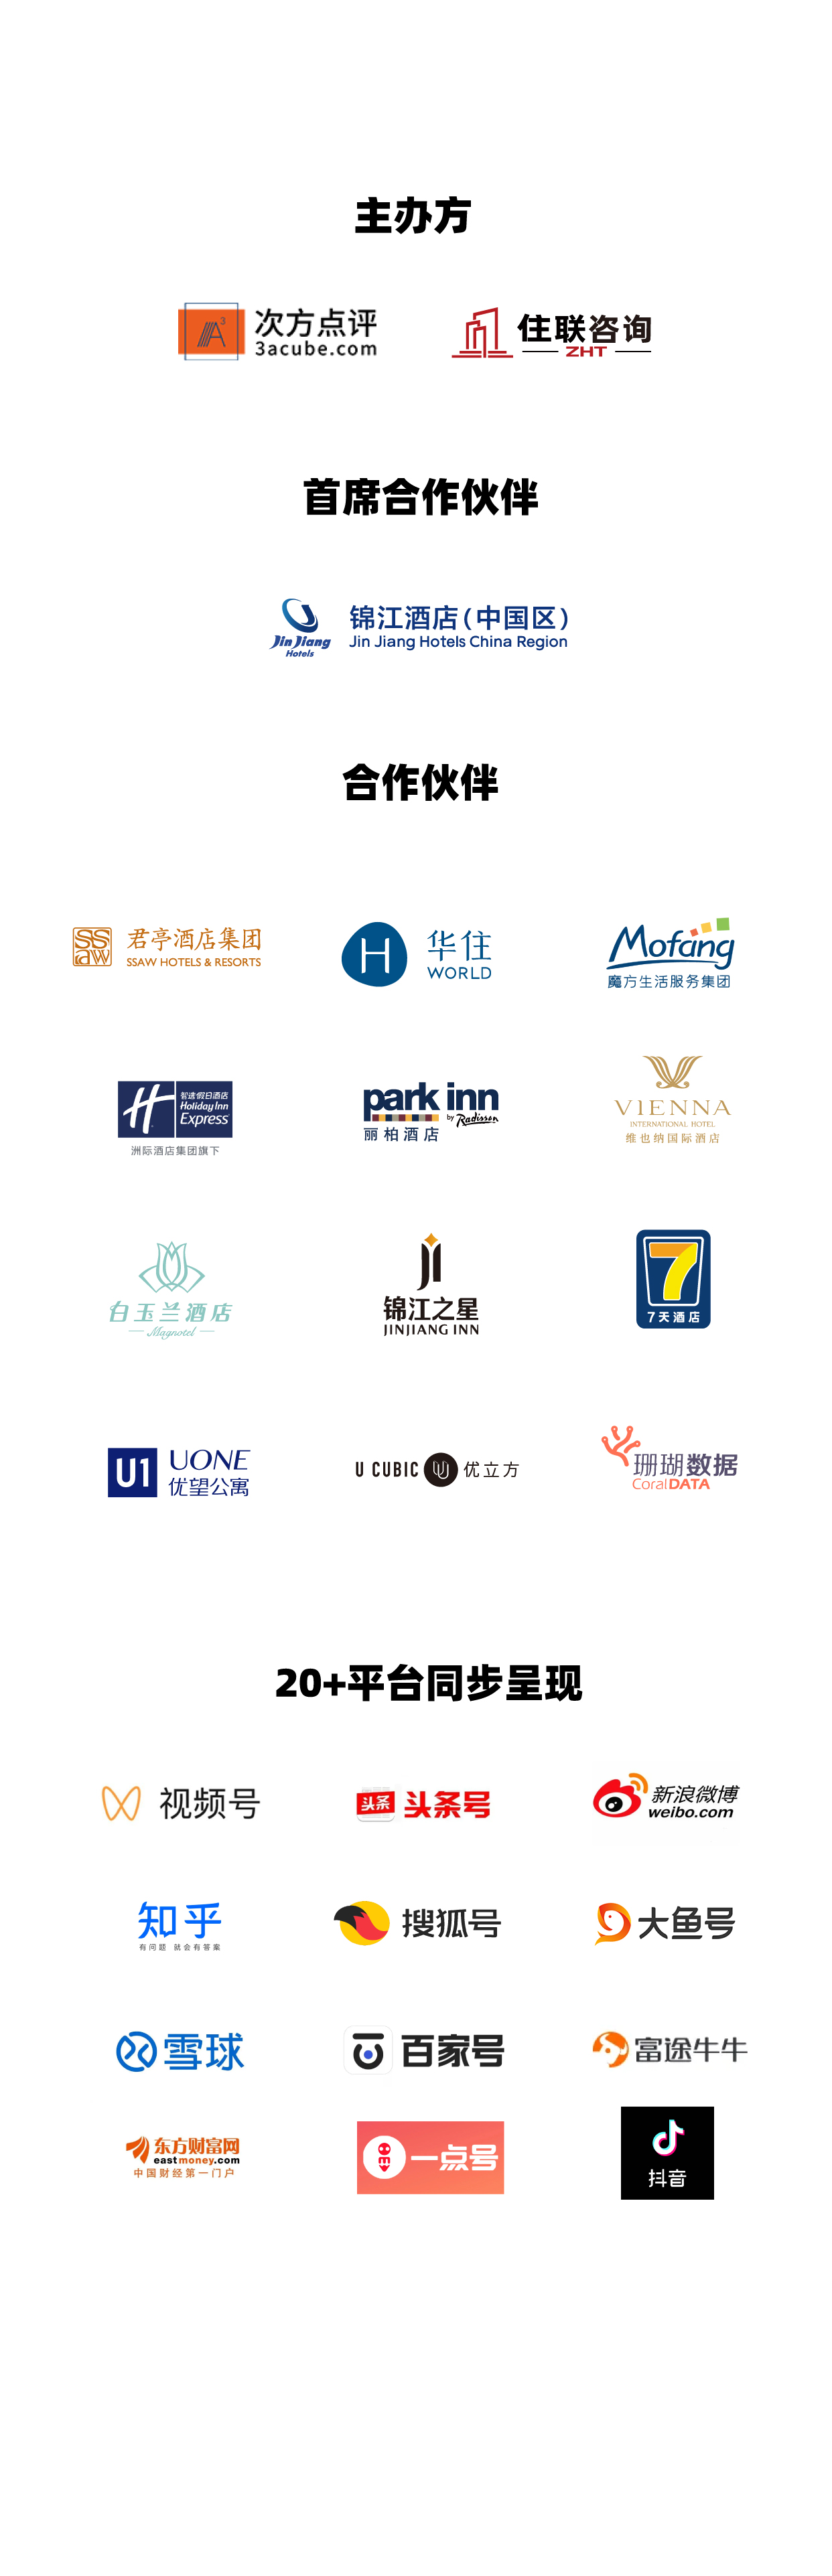 2022中国酒店及住房租赁产业投资年度报告大课堂&结业礼